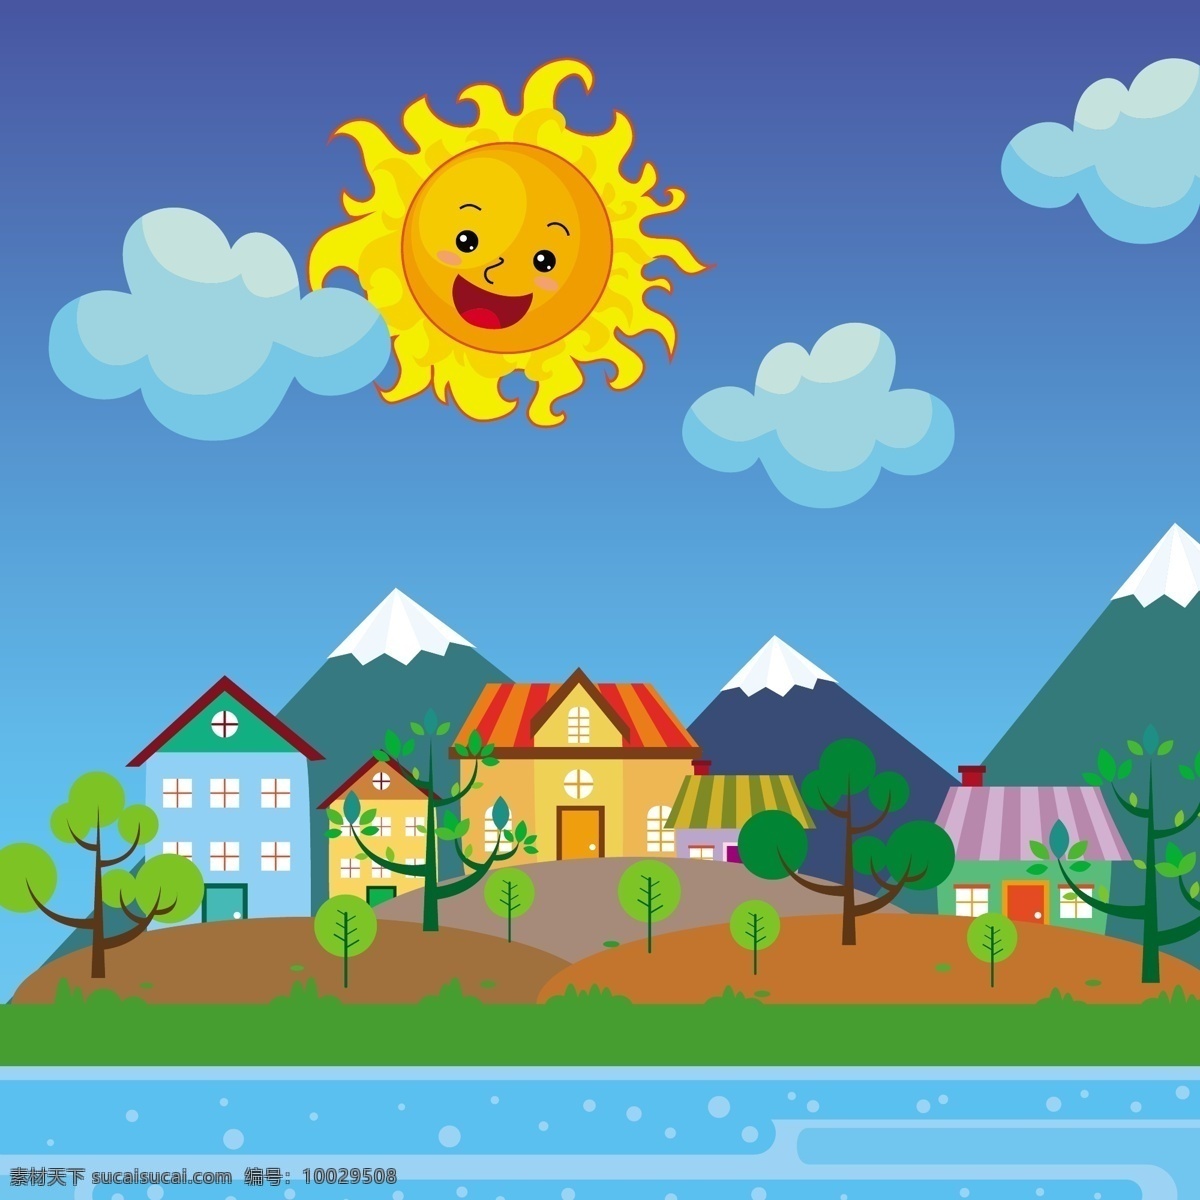 城市 阳光 绘制 彩色 卡通 风格 背景 图 广告背景 背景素材 广告 绿色小树 太阳 云朵 蓝色天空 房子 建筑